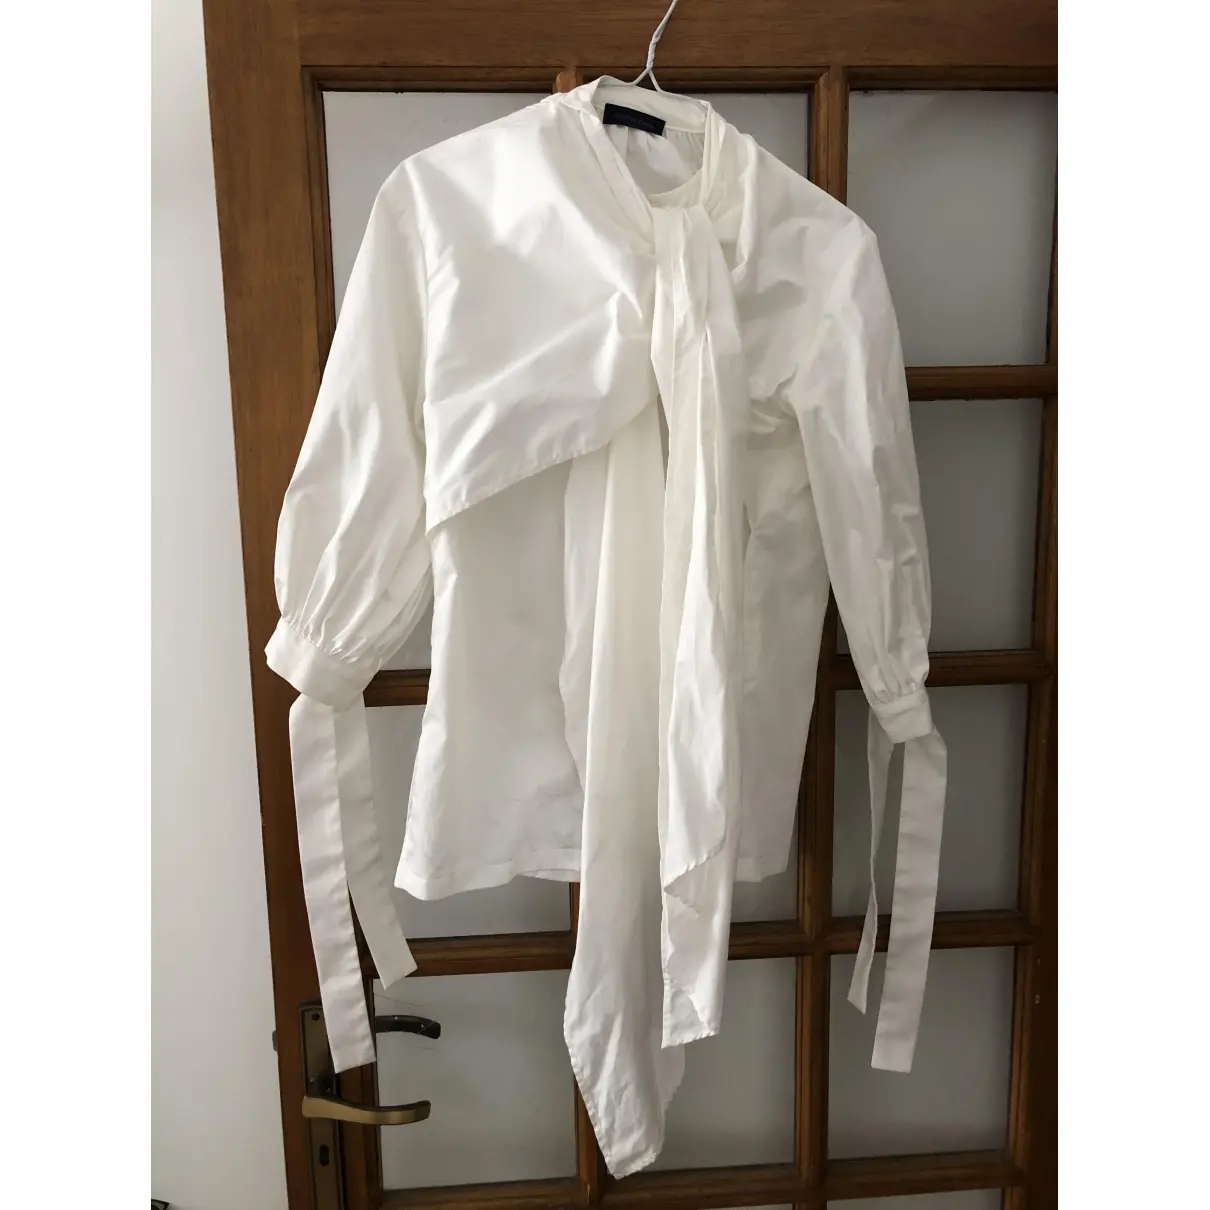 Buy Eudon Choi White Cotton Top online